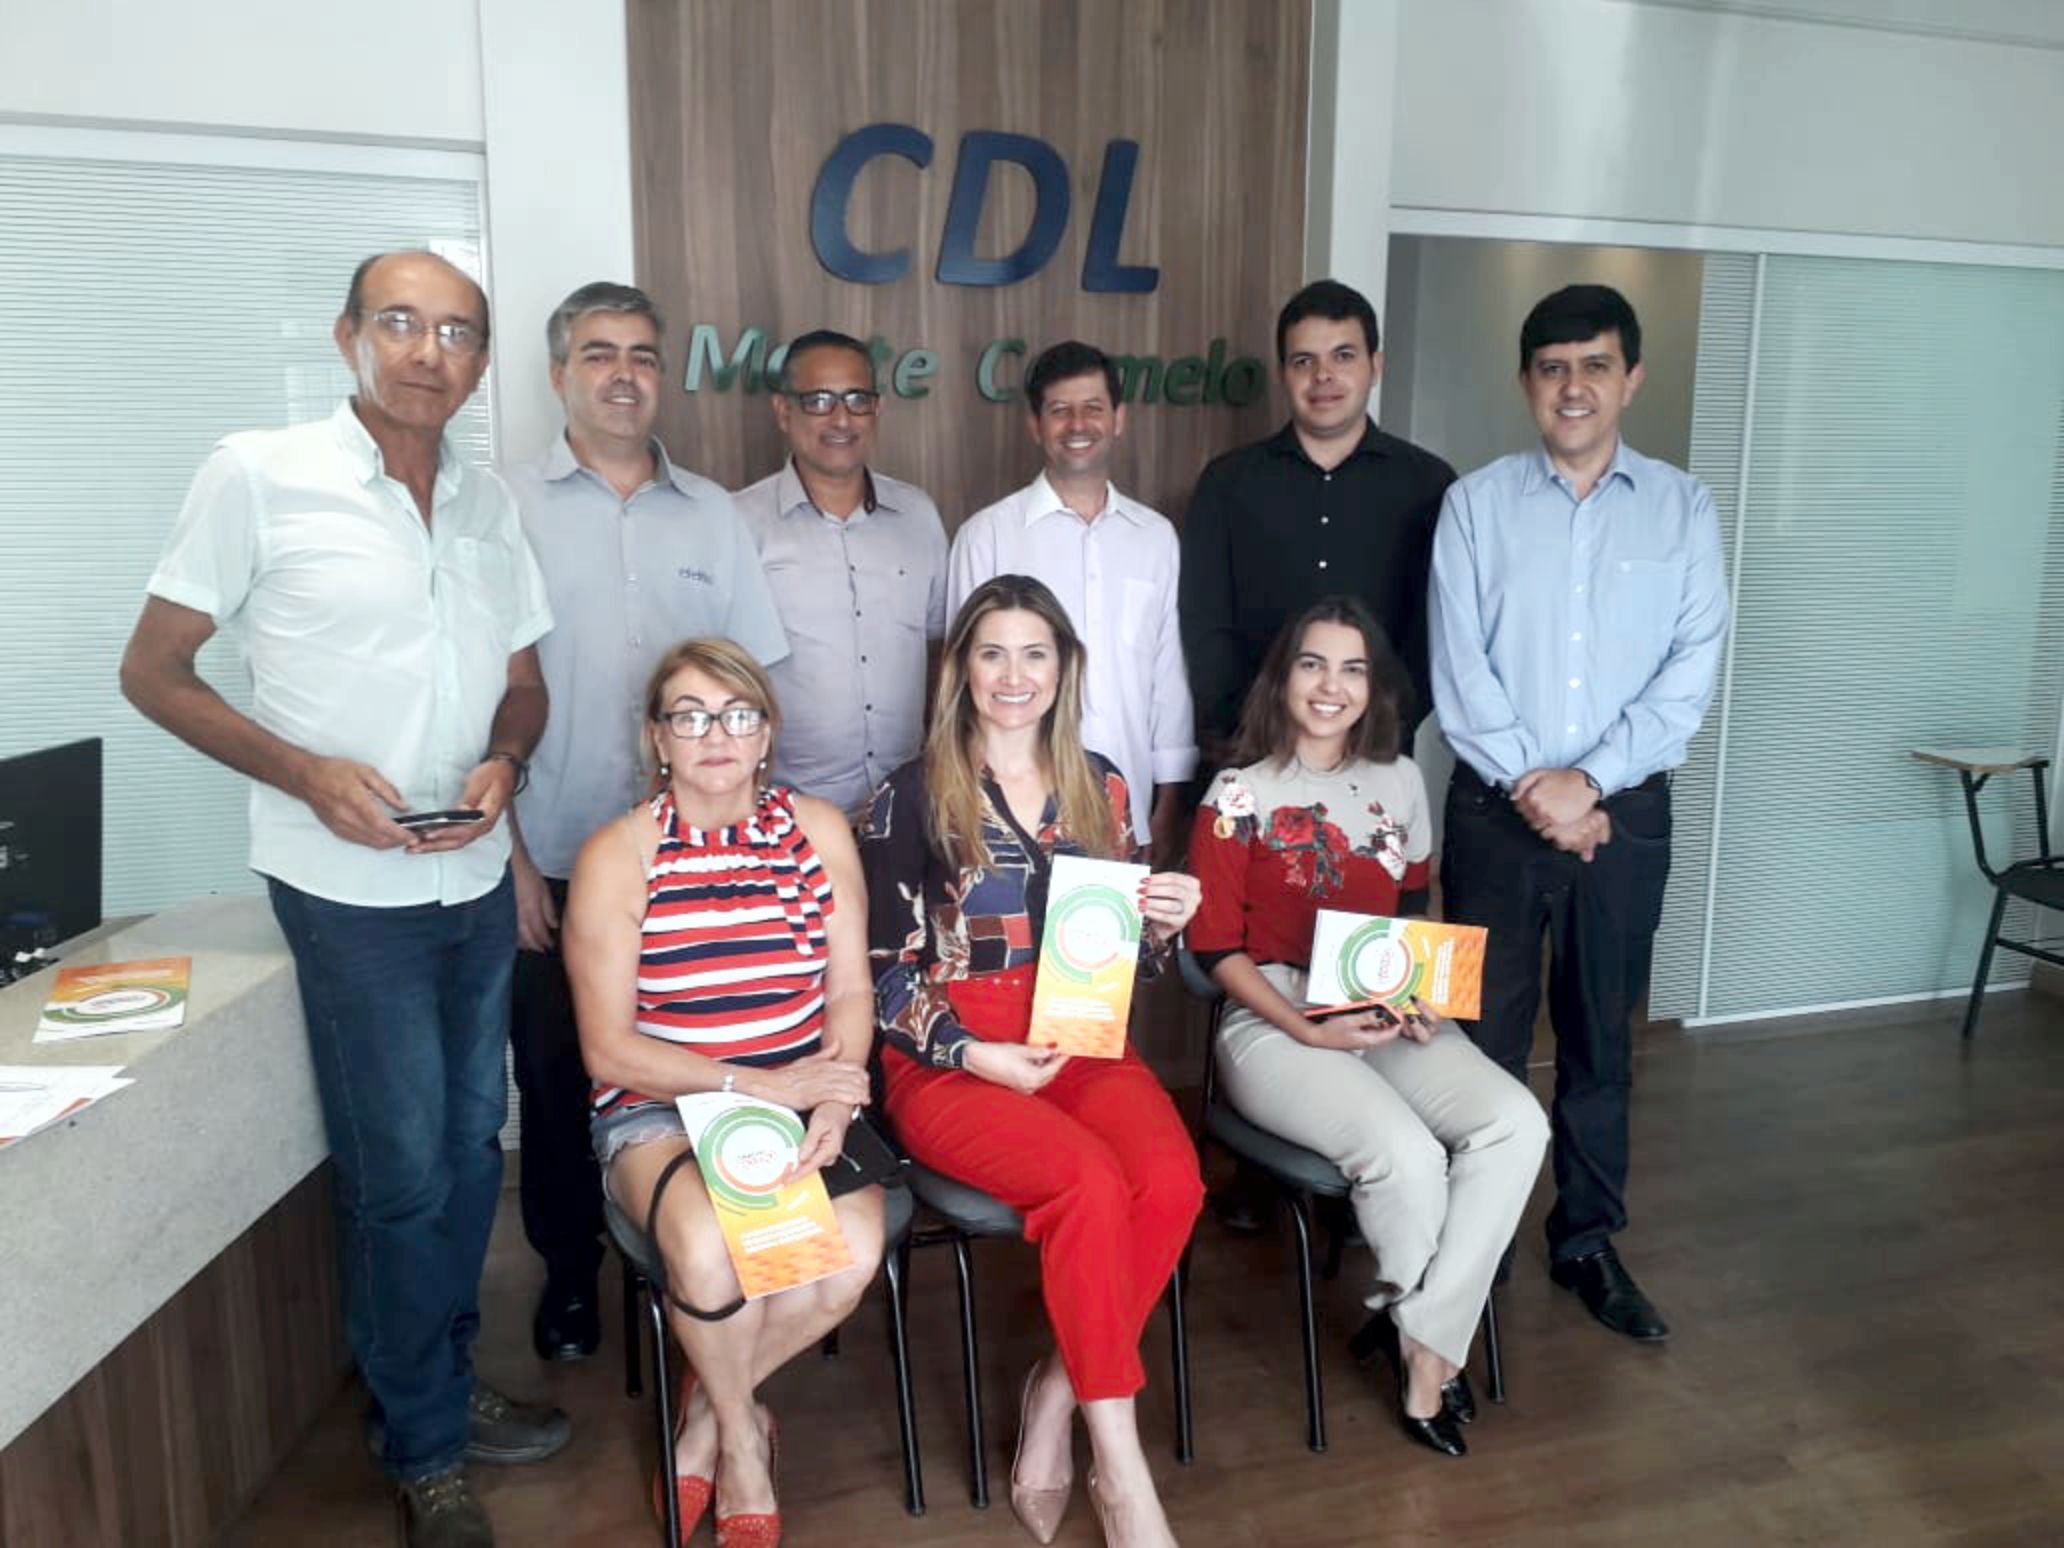 CDL recebe em sua sede a visita da Deputada Federal Greyce Elias e de autoridades municipais